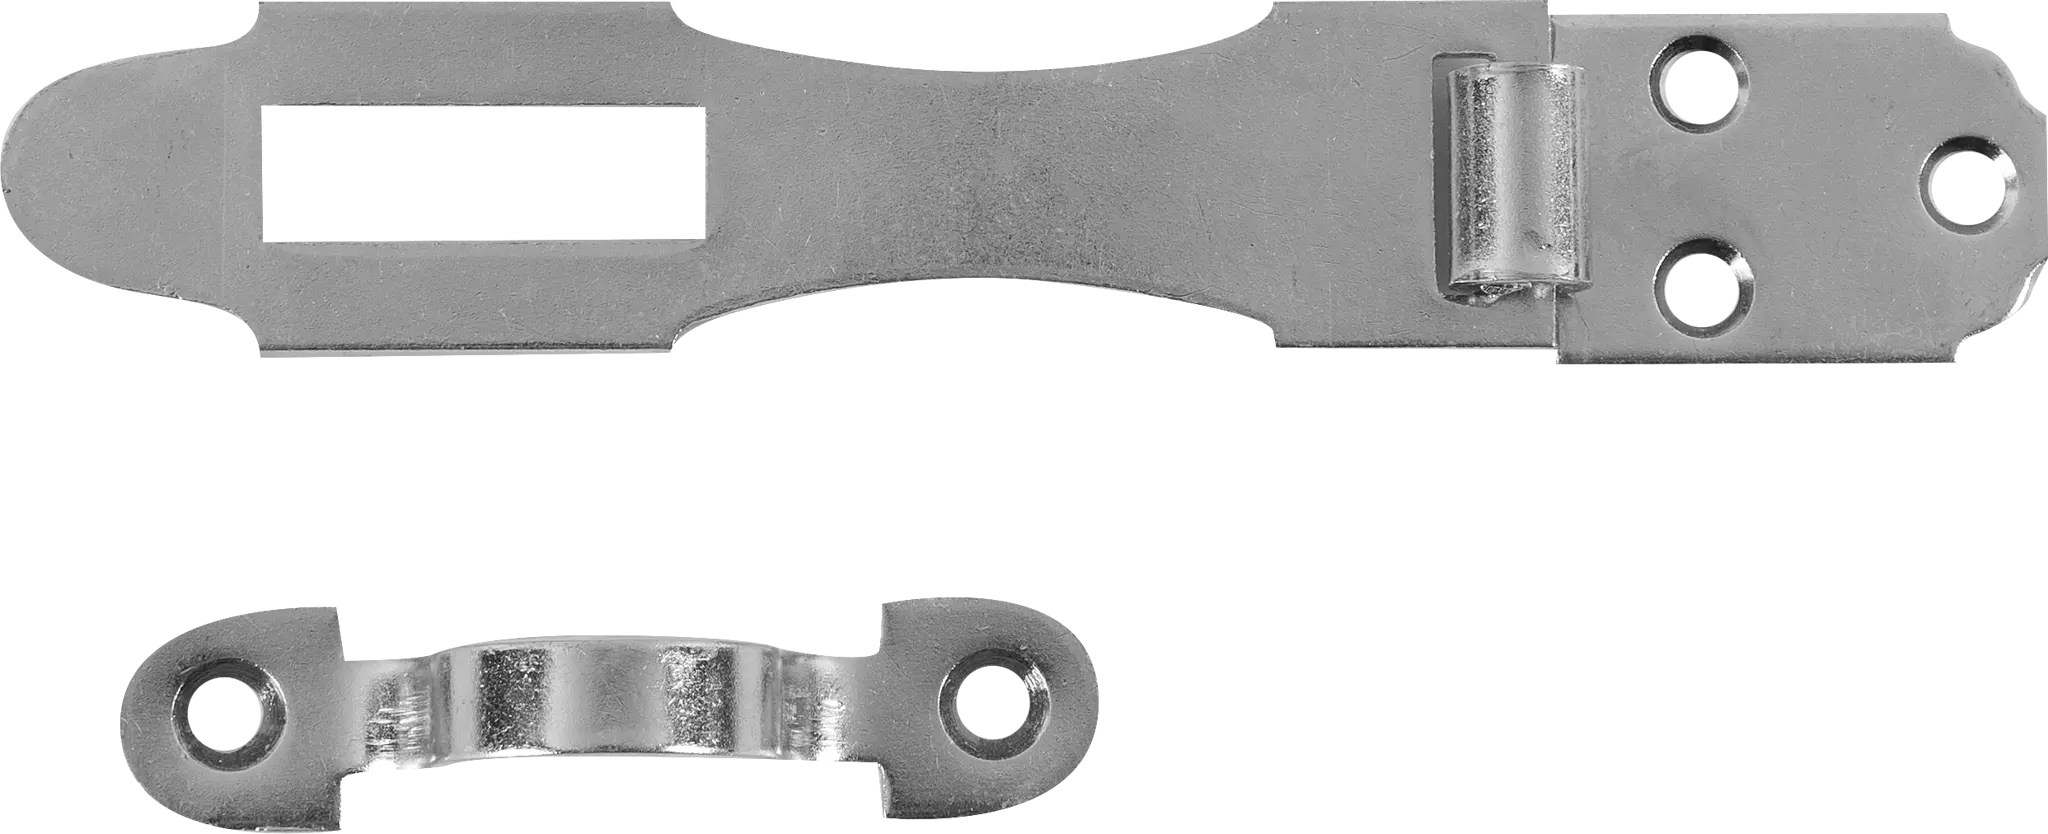 Накладка для навесного замка 90 мм навеска gah alberts оцинкованная с проушиной для навесного замка 25x70 мм